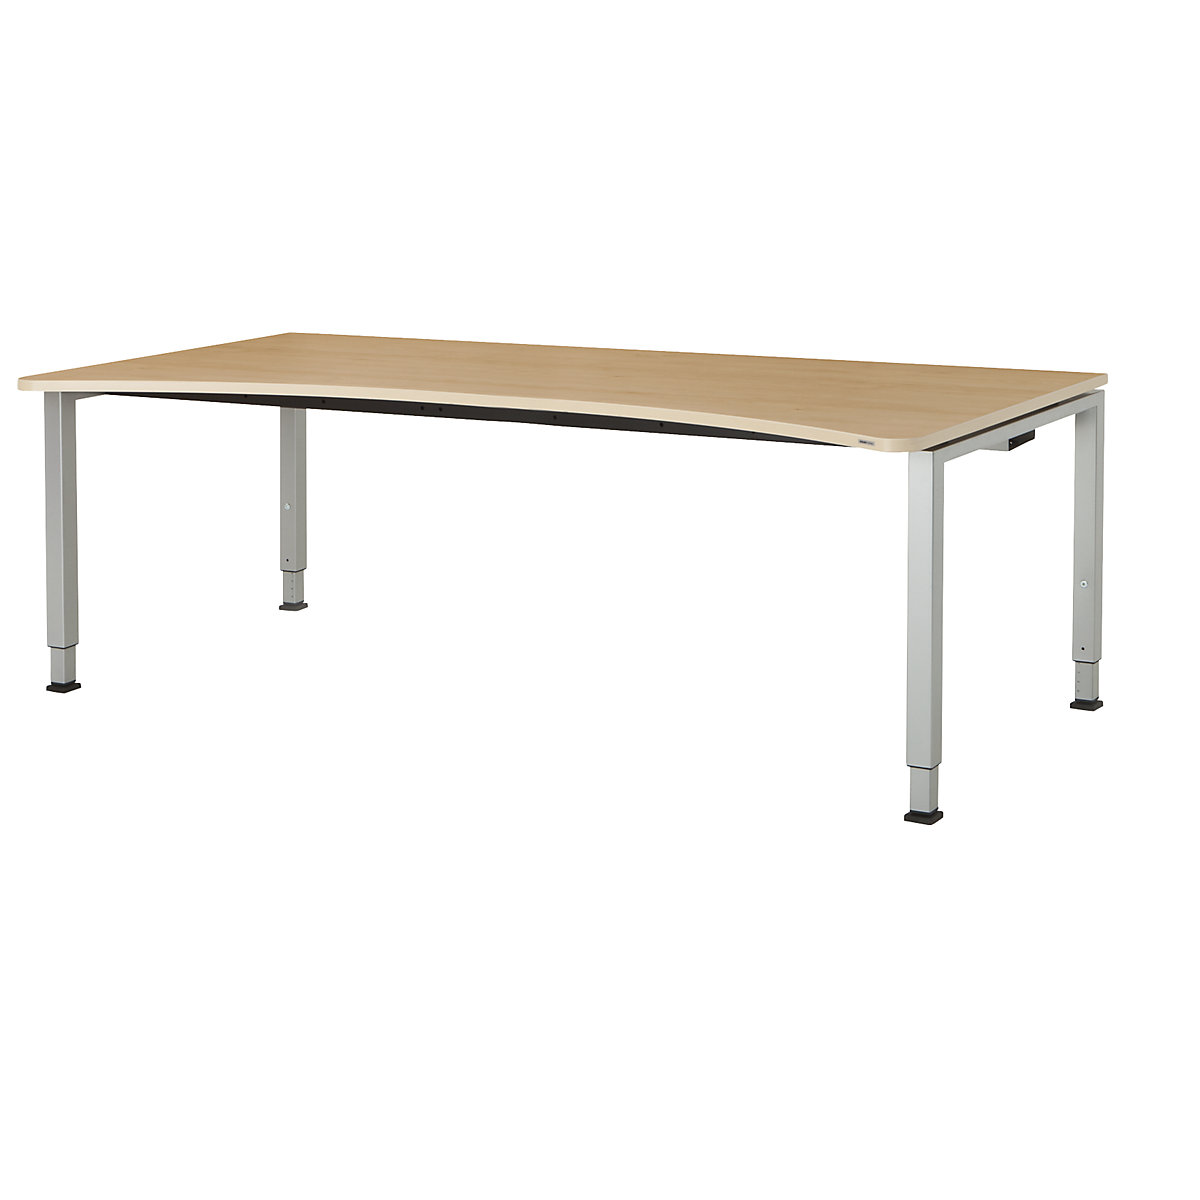 Designový stůl s přestavováním výšky - mauser